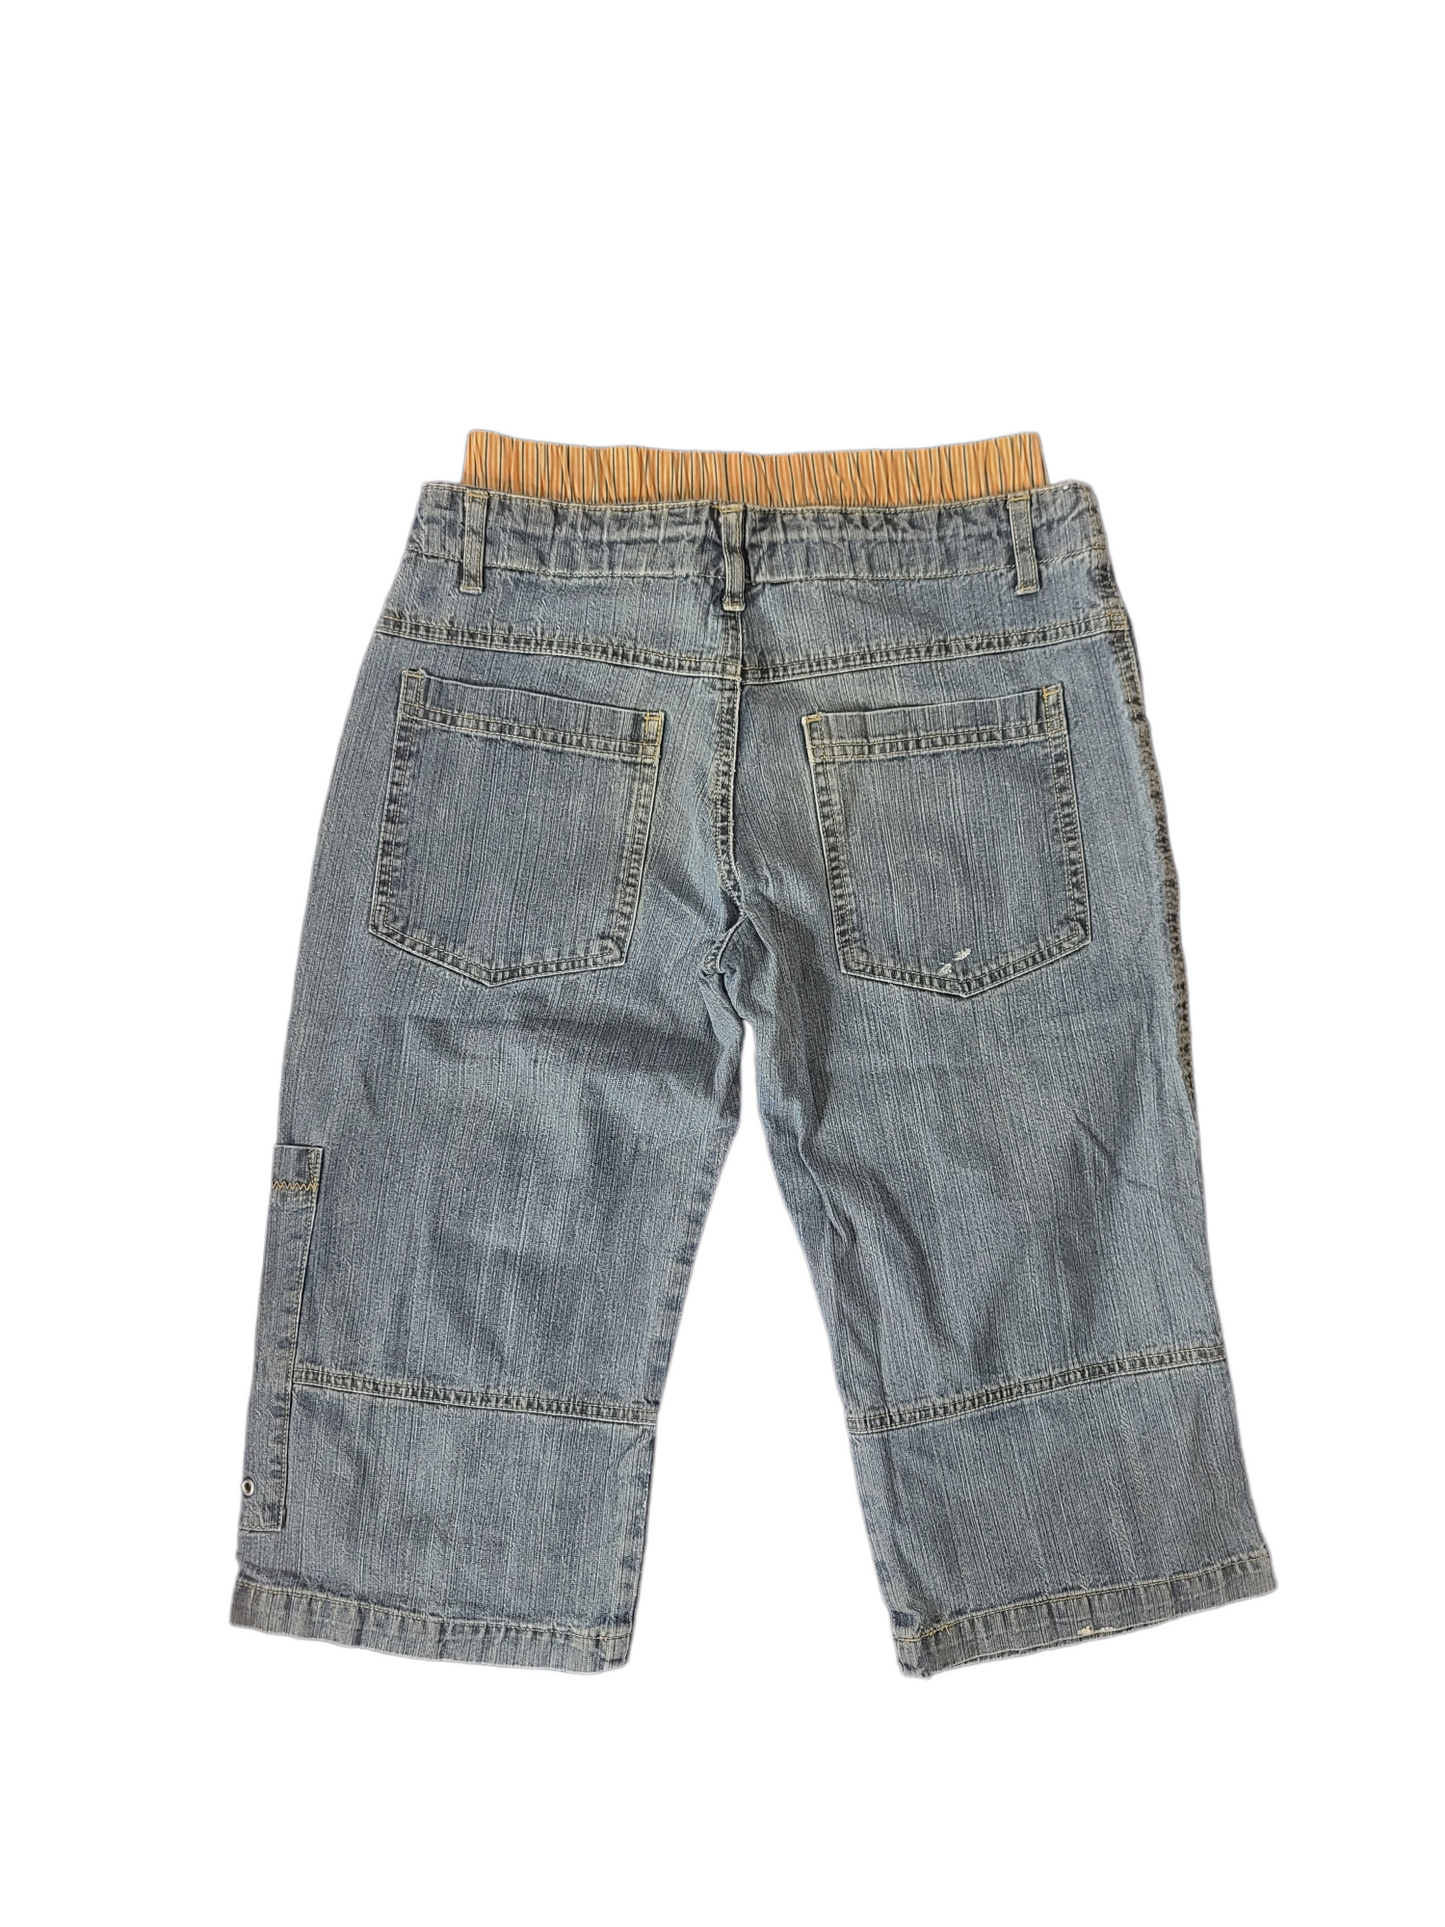 90s denim street pants